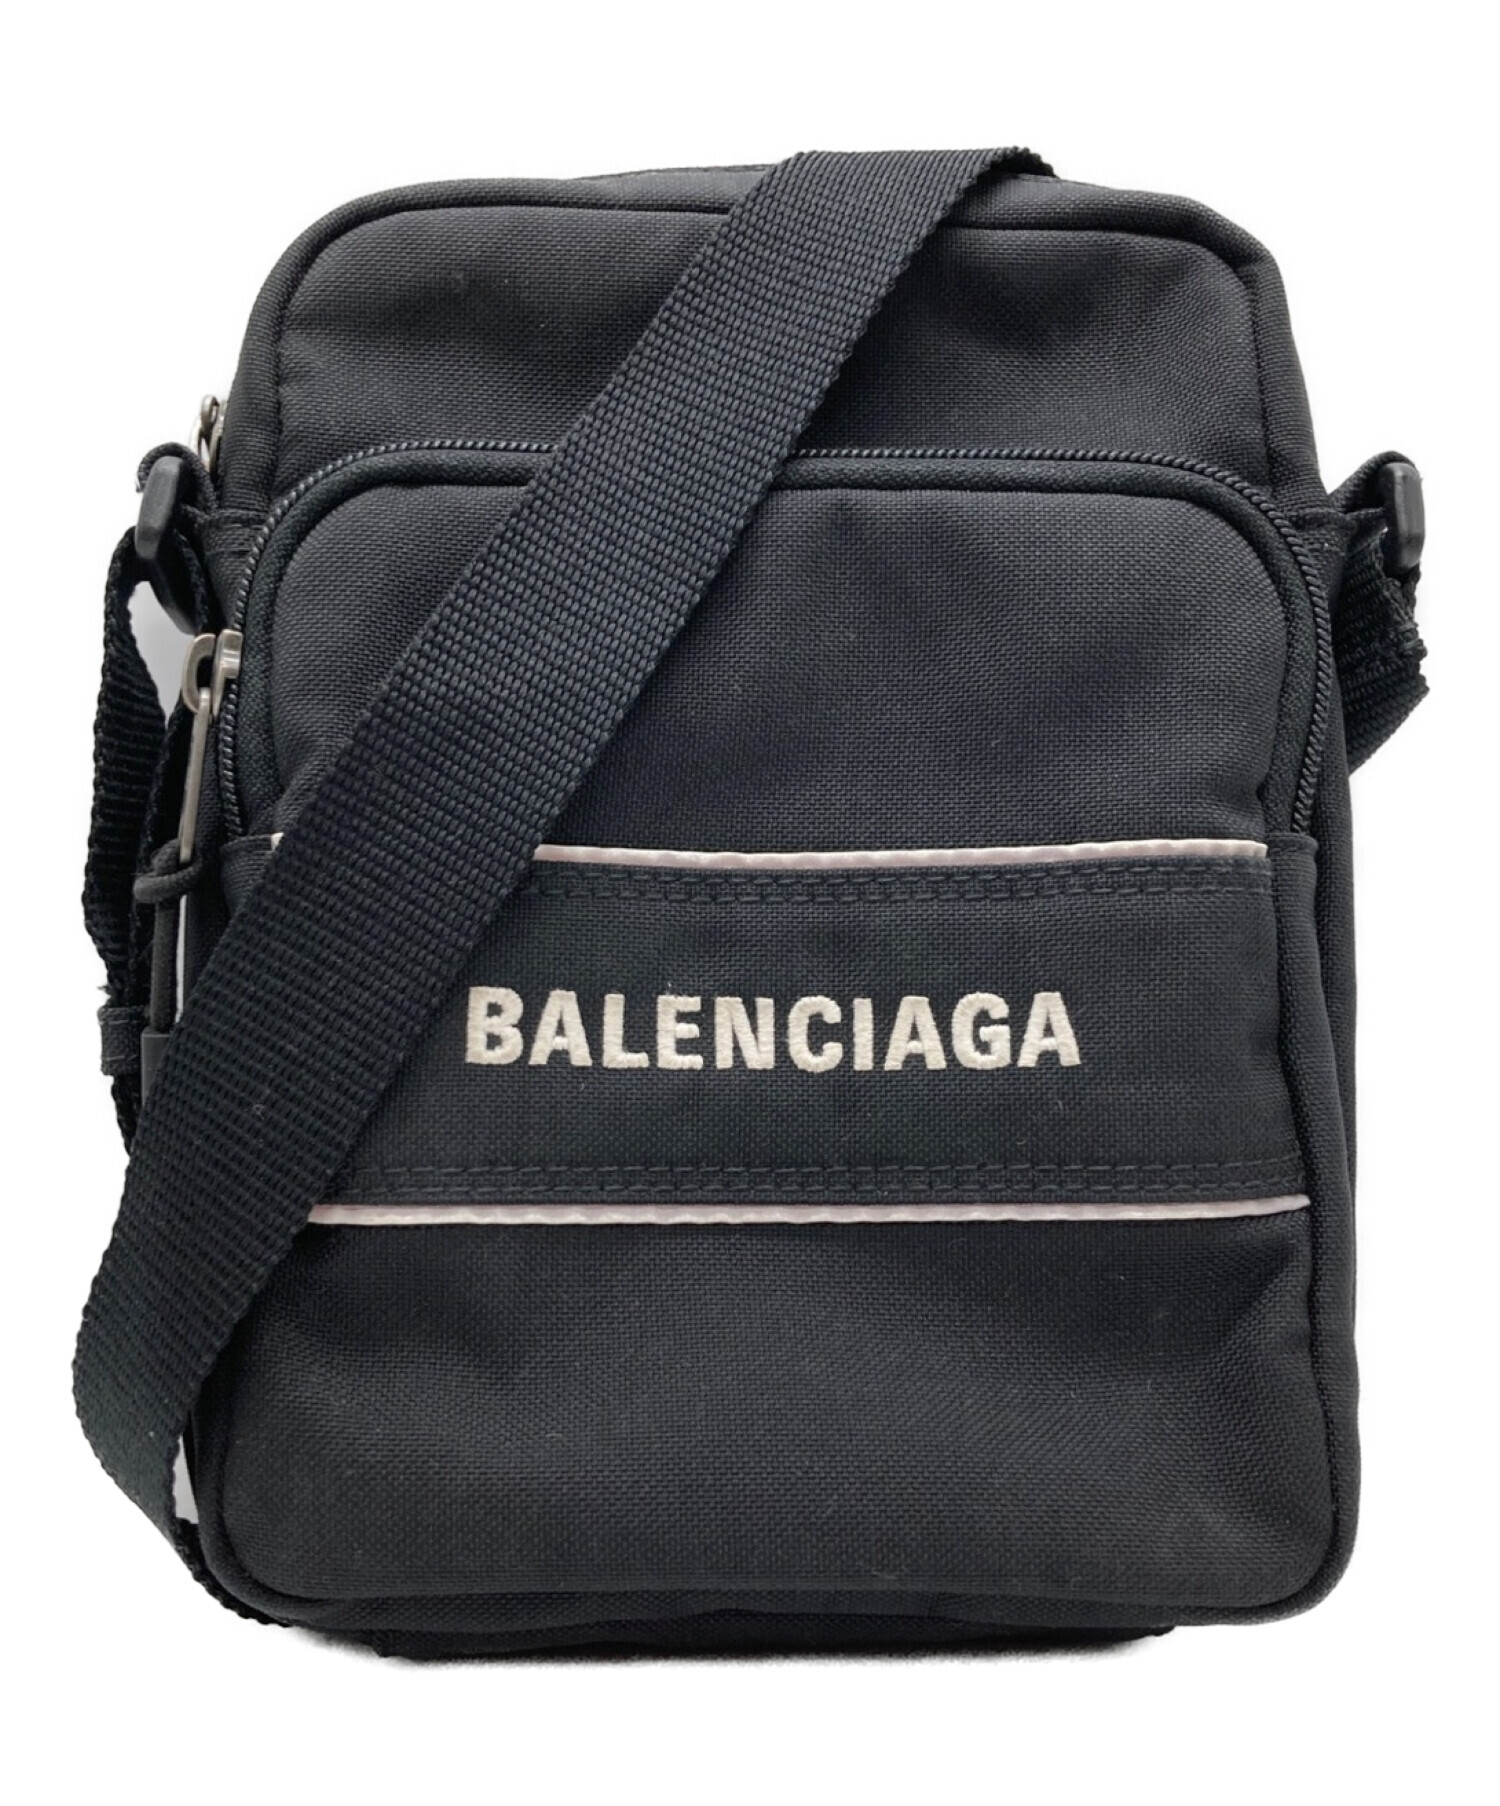 BALENCIAGA (バレンシアガ) スモールメッセンジャーバッグ ブラック